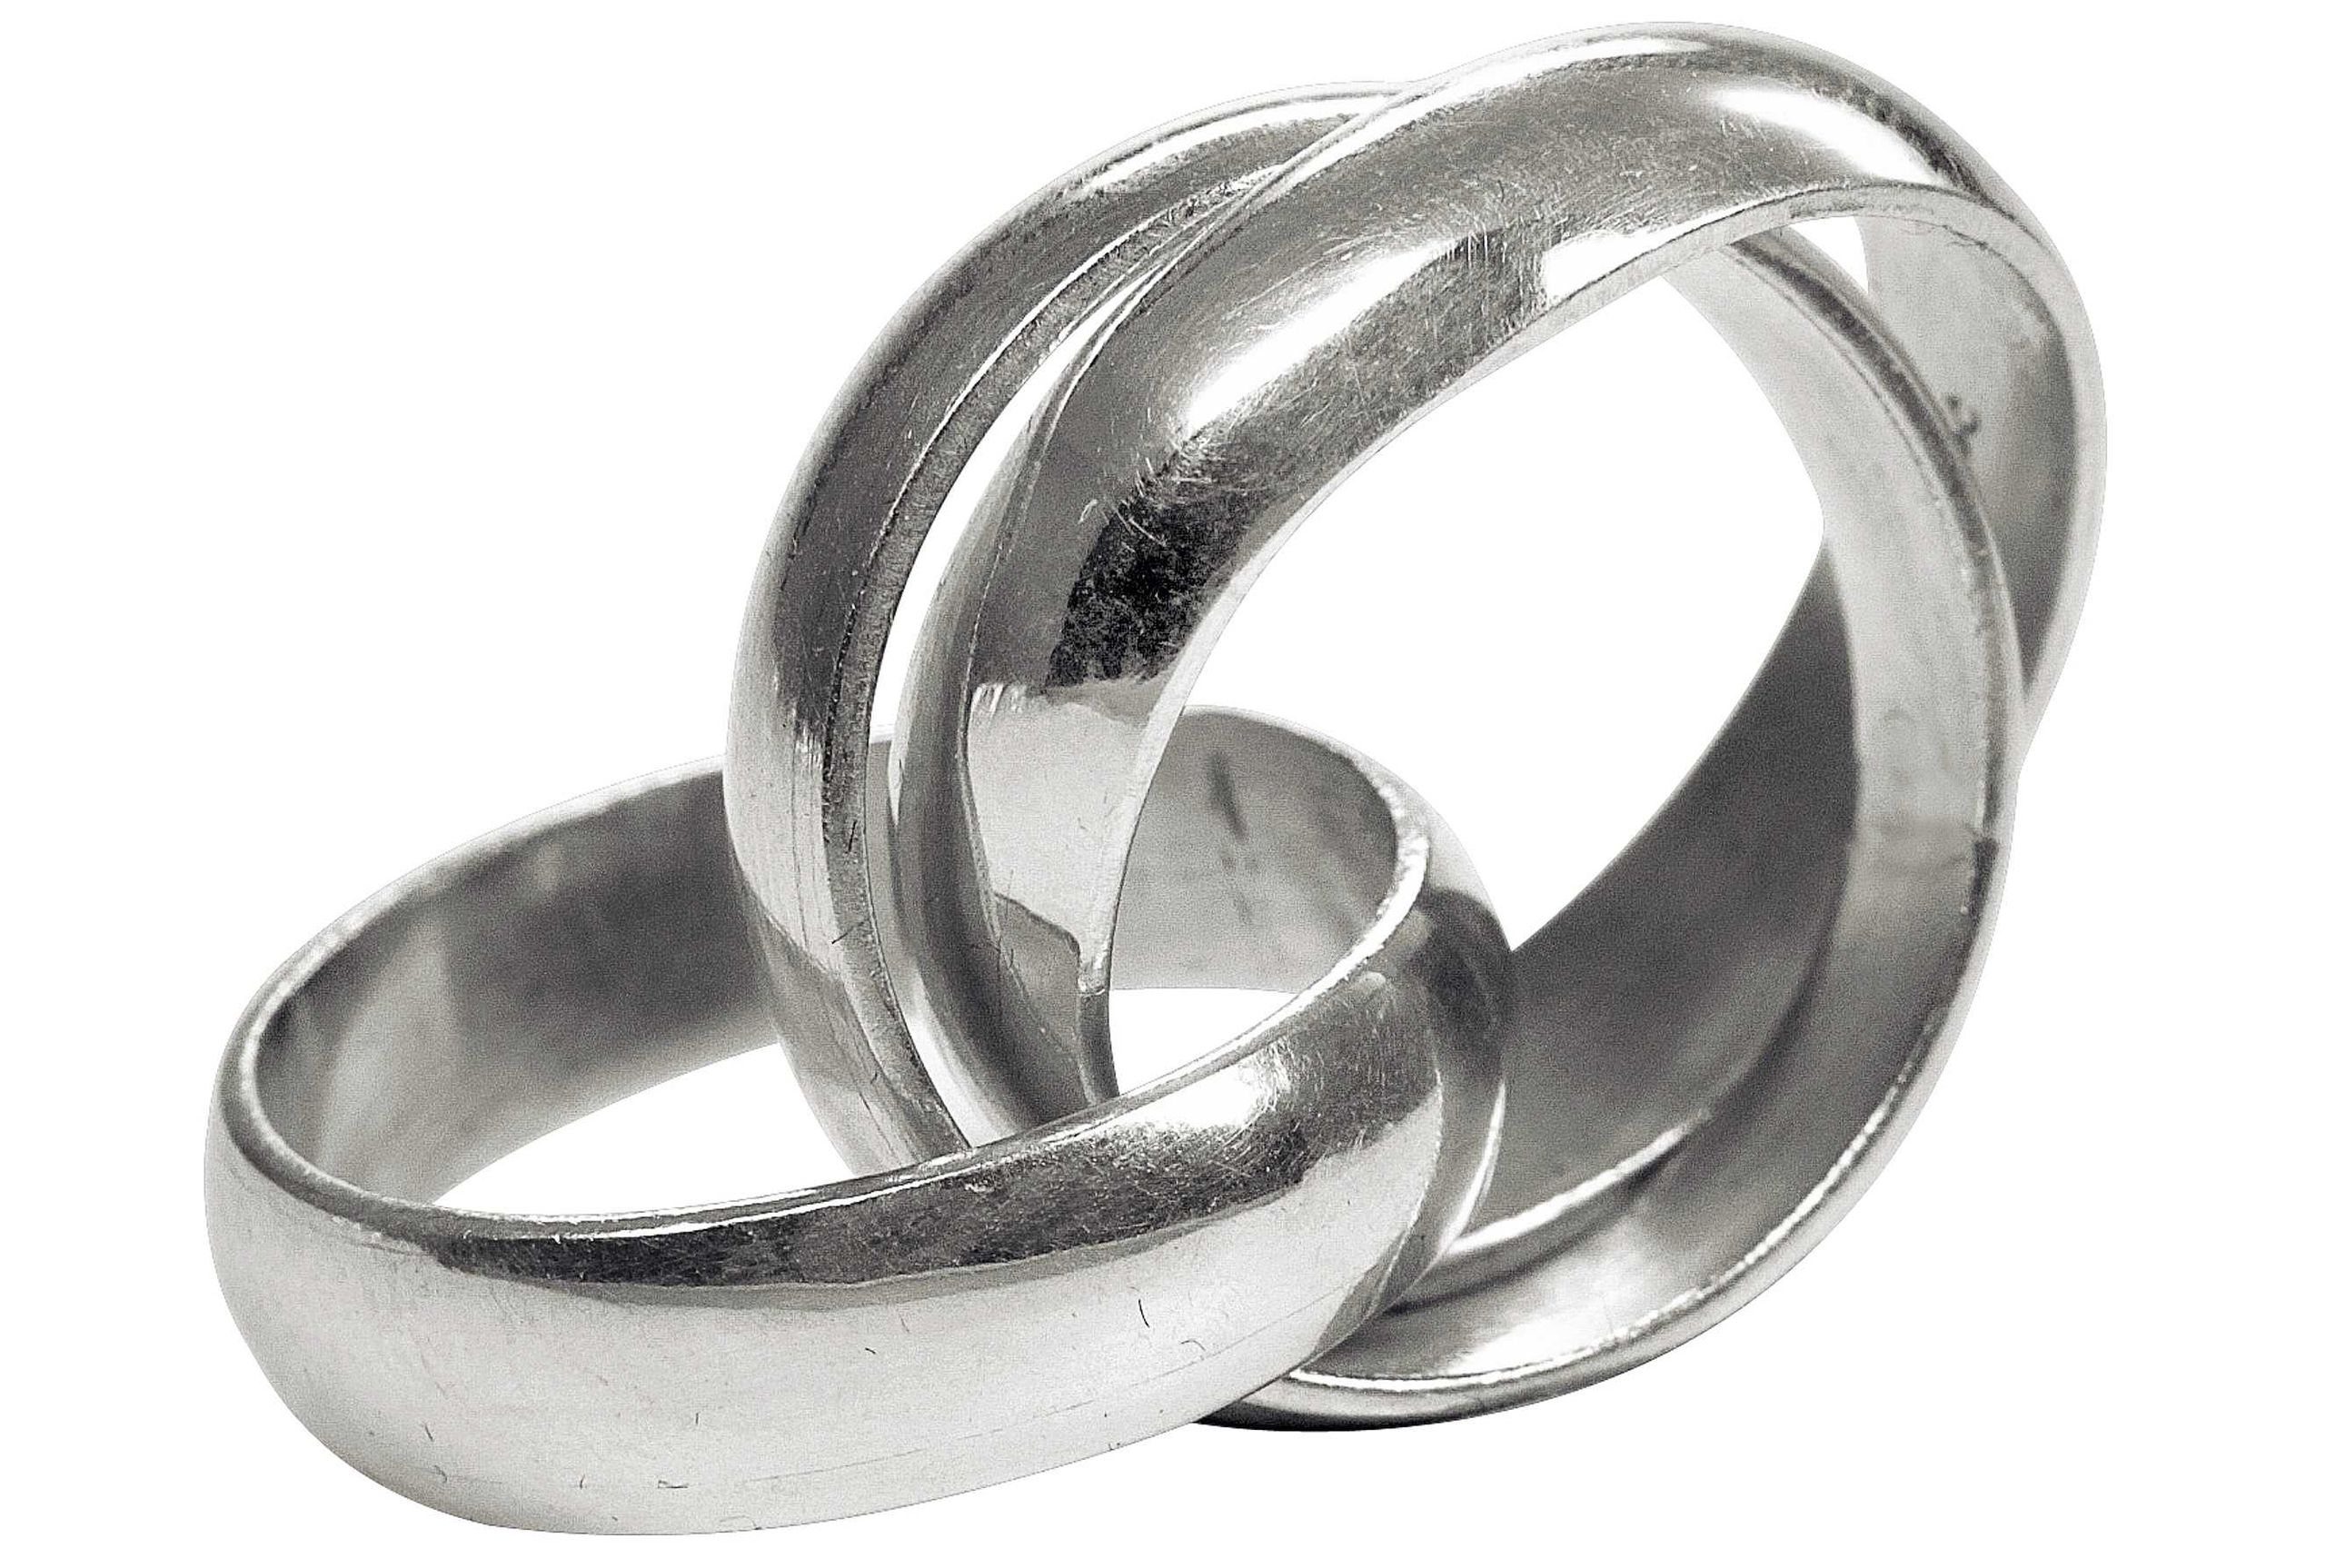 Geschmiedeter Dreierring aus Silber in den Größen 64 bis 70 mit glänzender Oberfläche. Die drei einzelnen Ringe sind frei beweglich.